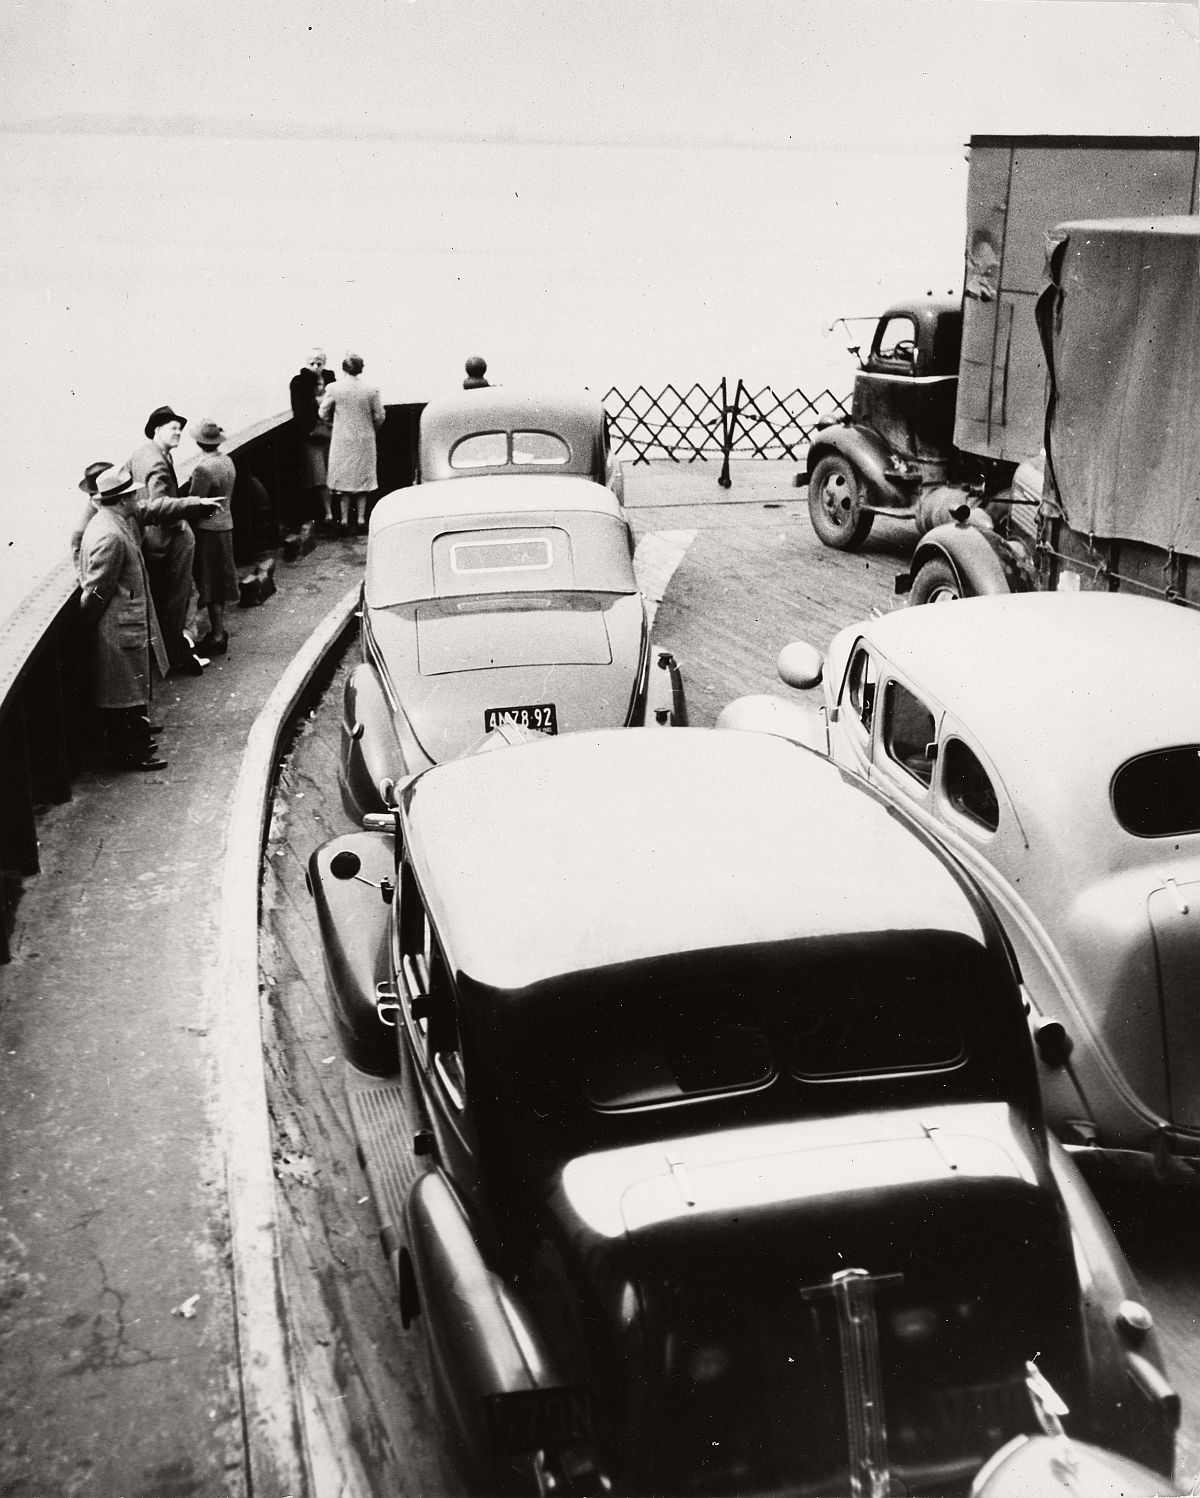 Robert Haas: On the ferry, New York City, 1940s © Wien Museum/Sammlung Robert Haas